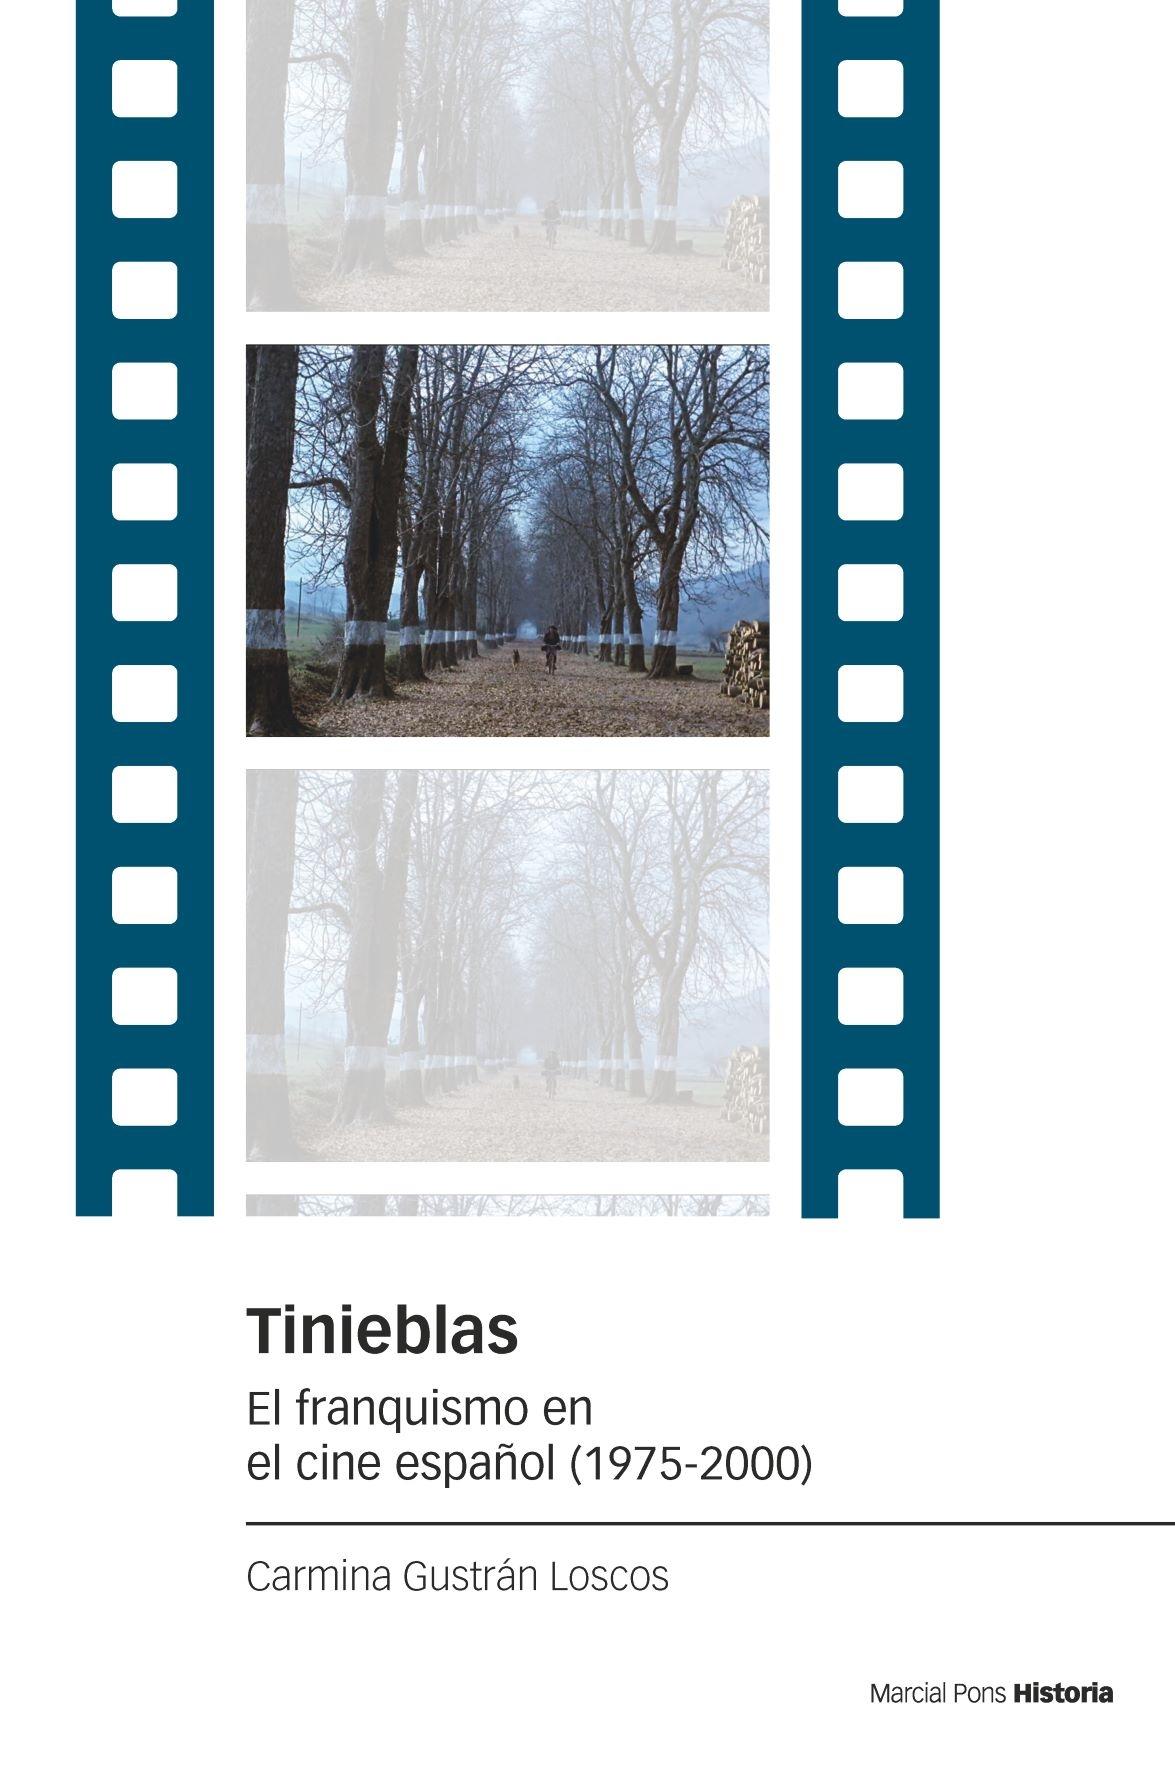 Tinieblas "El Franquismo en el Cine Español (1975-2000)". 